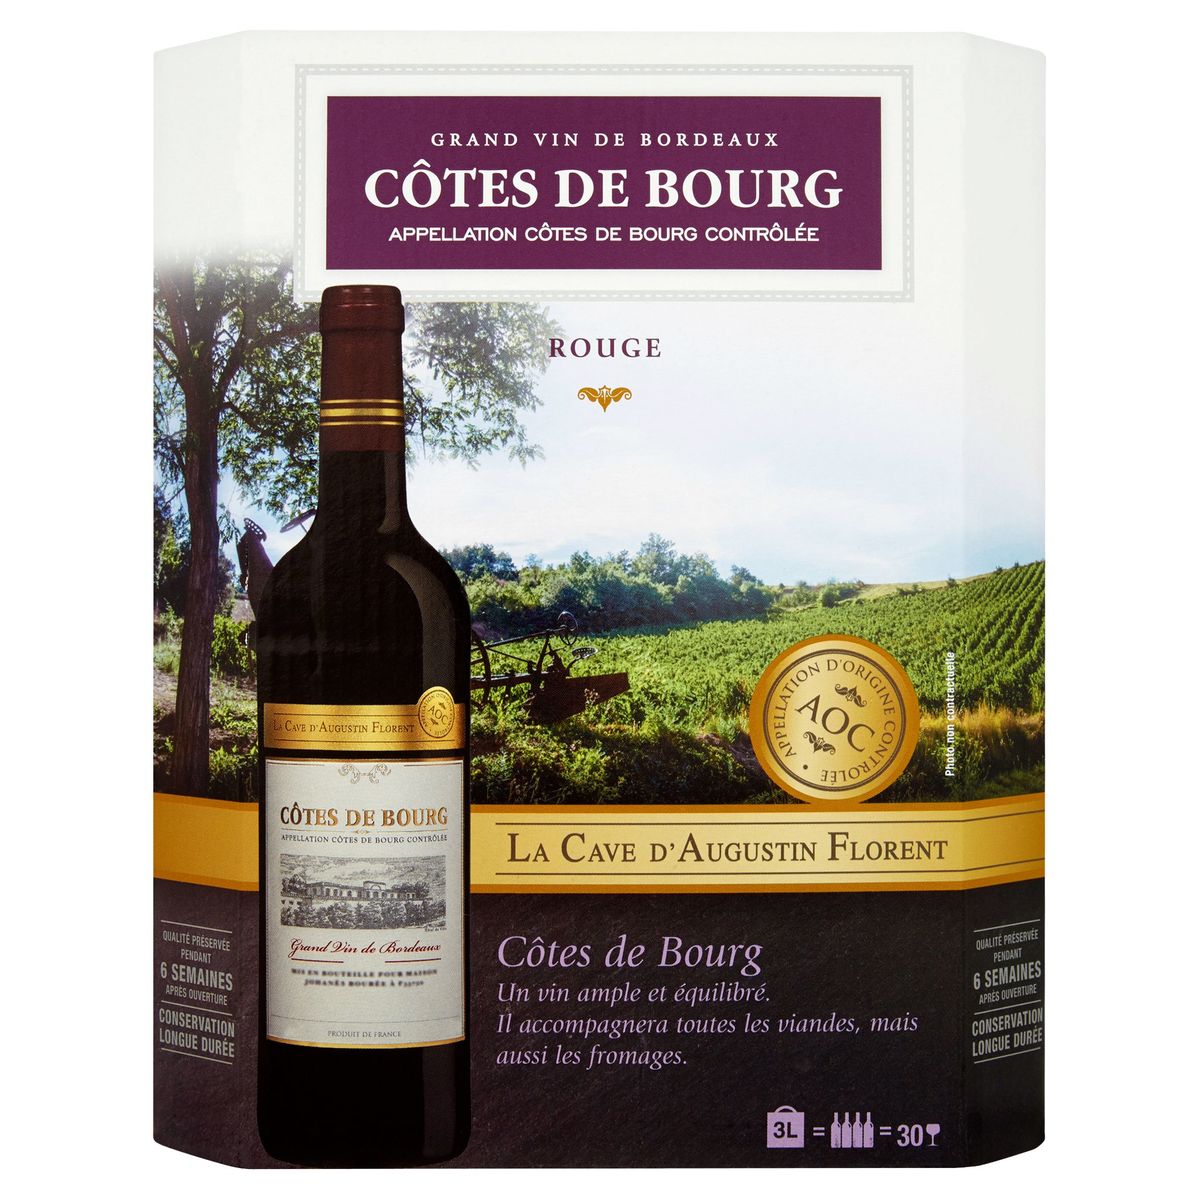 La Cave d'Augustin Florent Côtes de Bourg Grand vin Bordeaux rouge 3 L